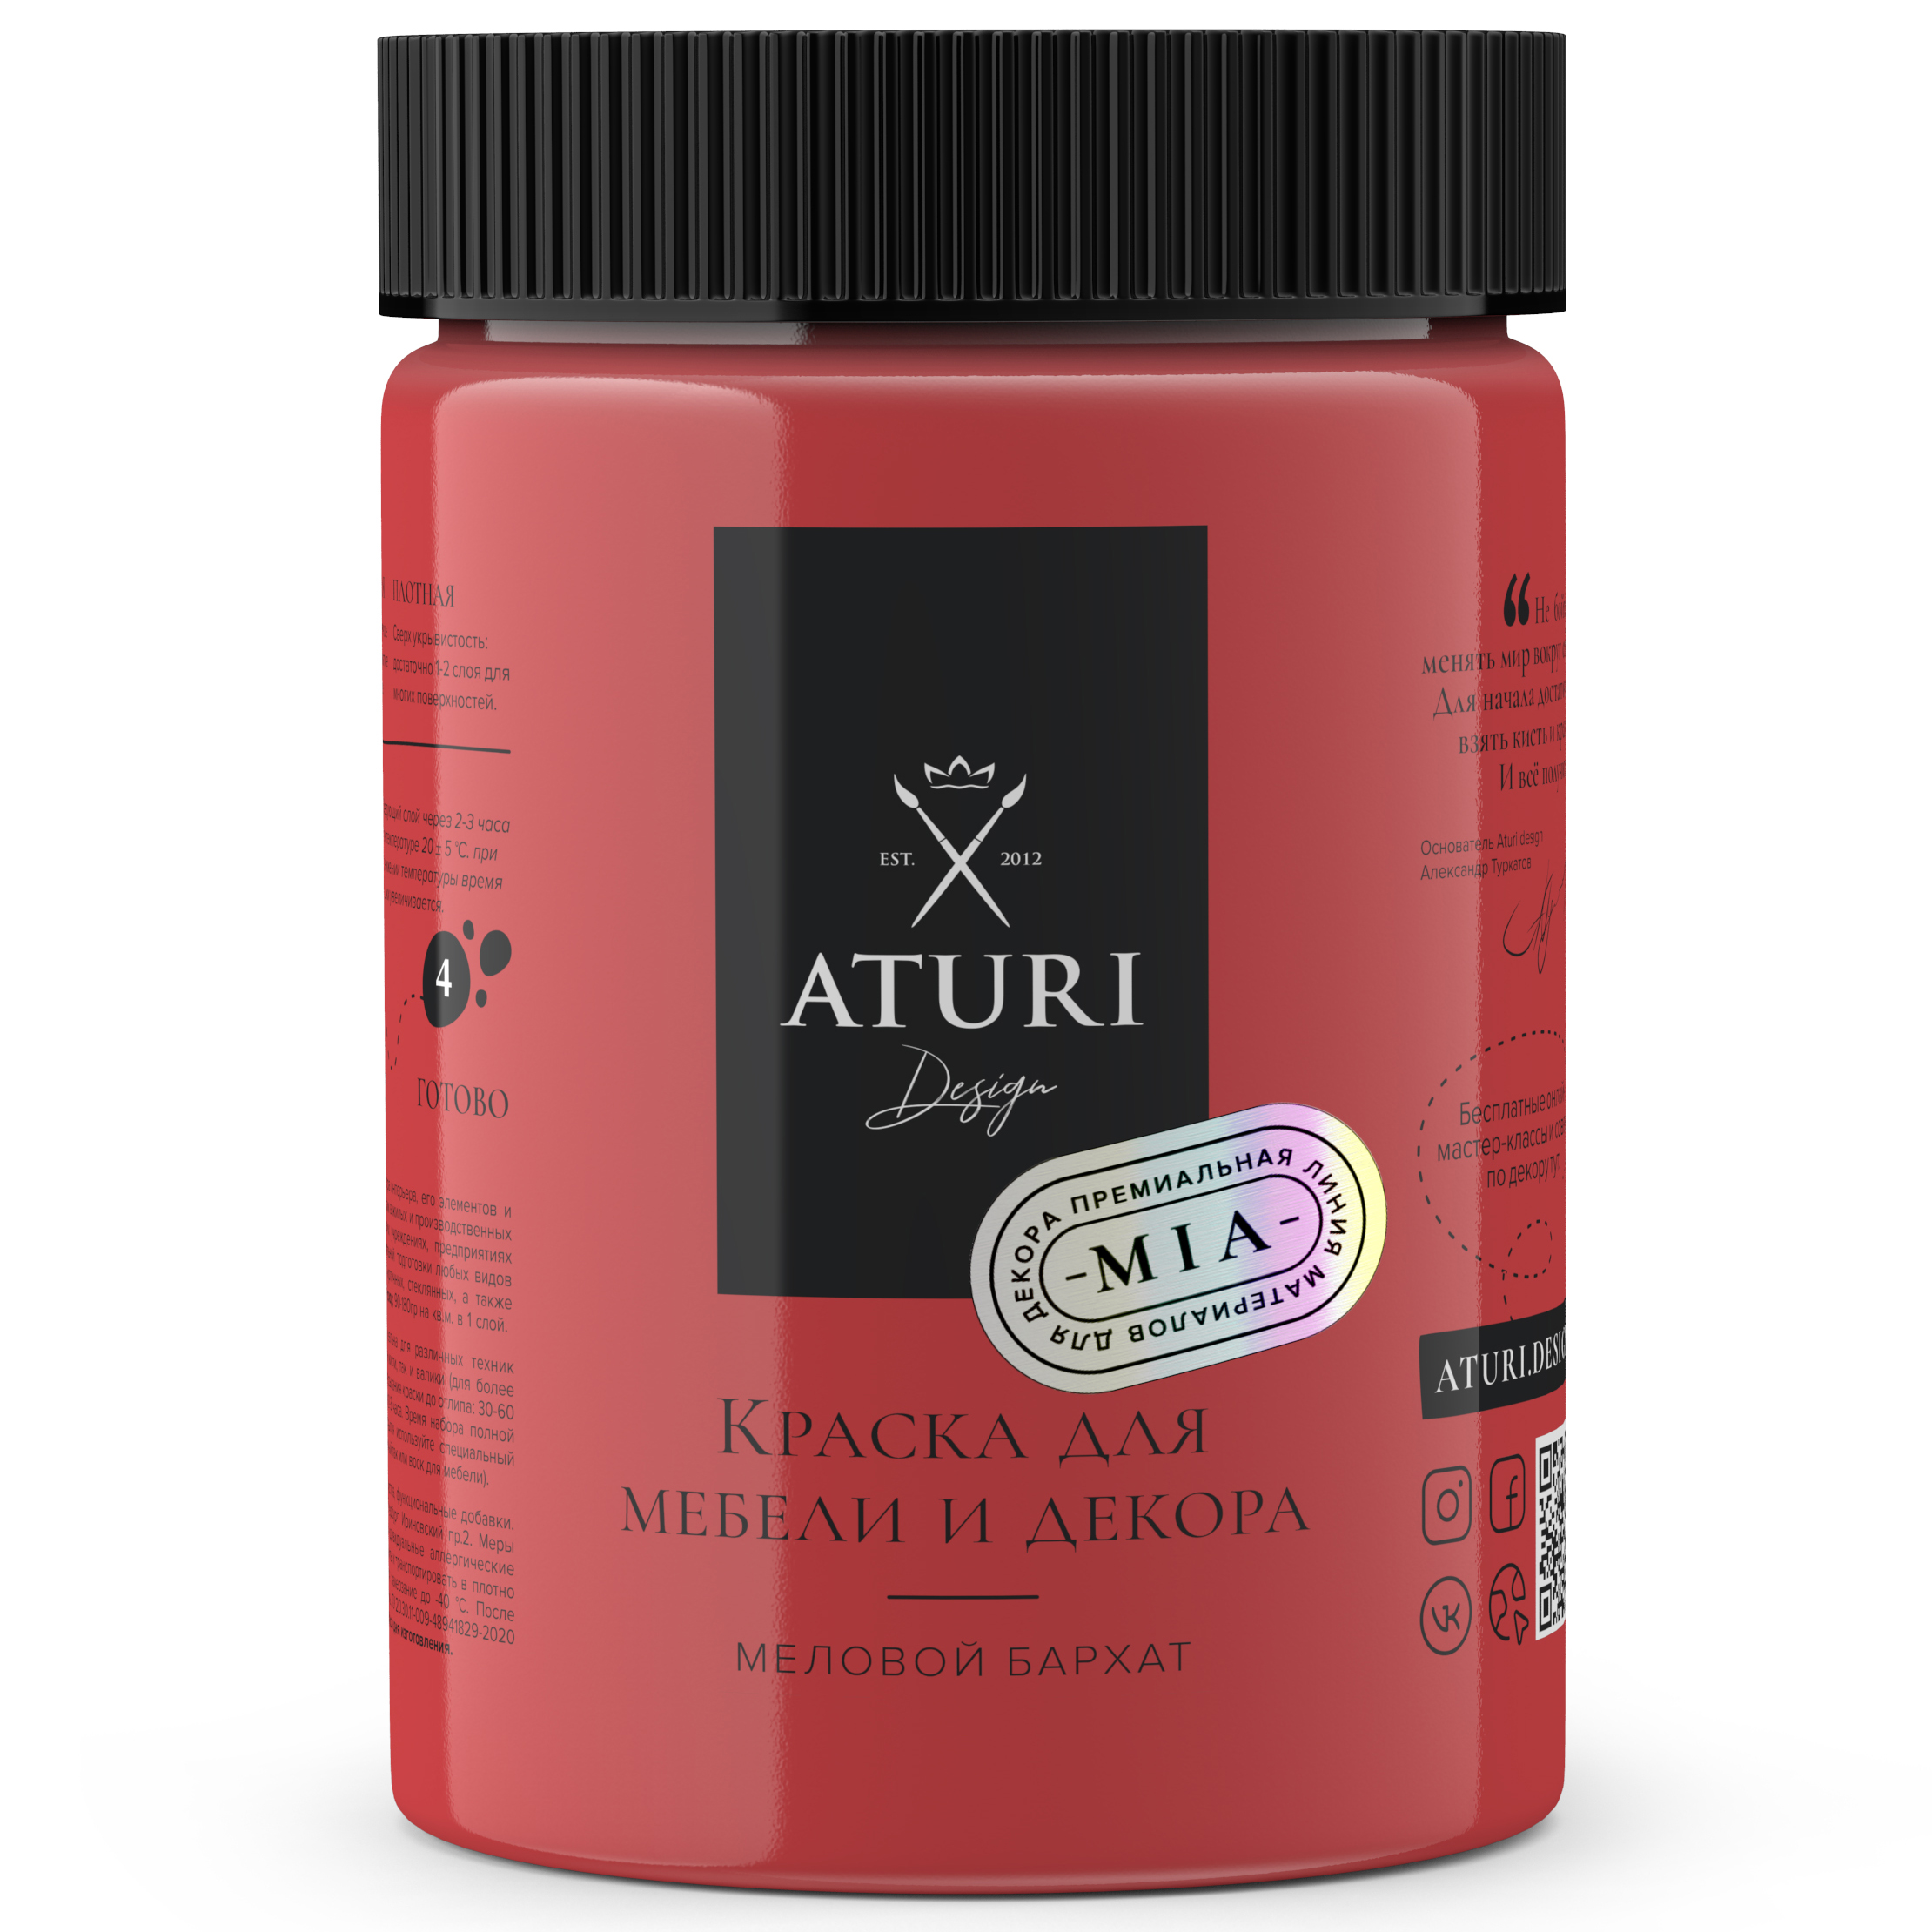 Краска Aturi Design Mia для мебели и декора, меловой бархат; Цвет: Красная помада, 830гр губная помада luxvisage тон 08